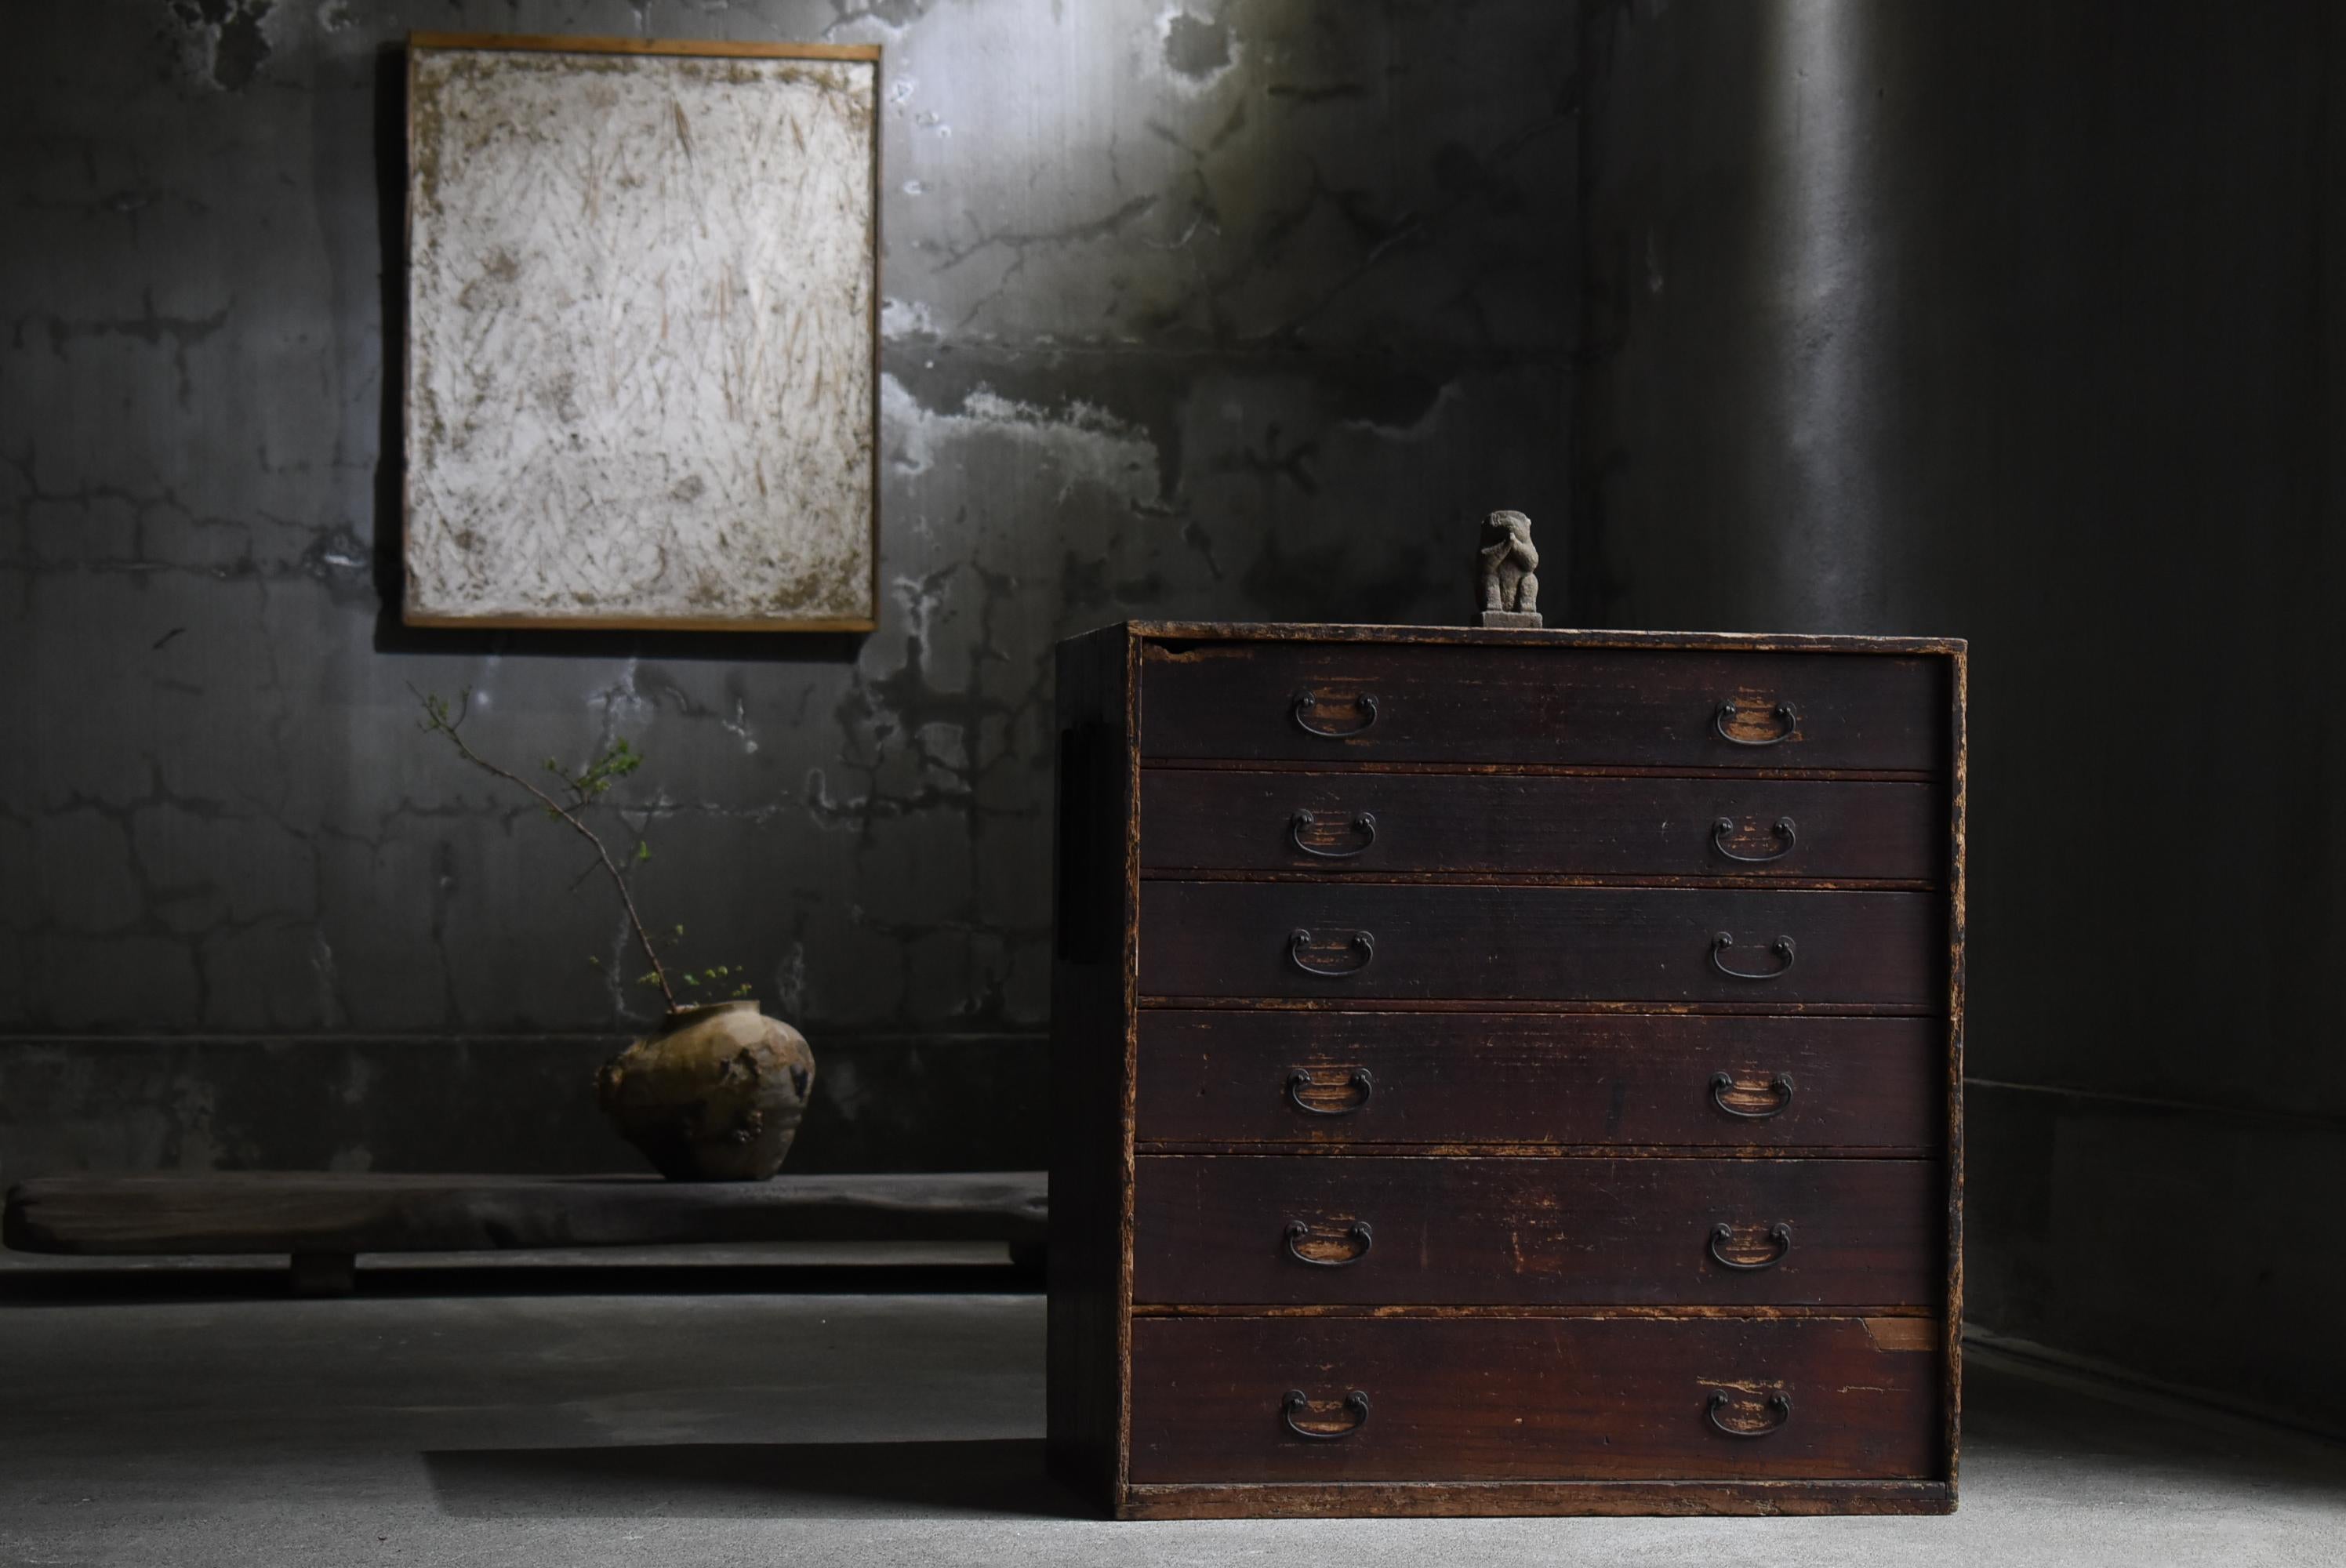 Sehr alte japanische Schublade.
Die Möbel stammen aus der Meiji-Zeit (1860-1900er Jahre).
Es ist aus Paulownia-Holz, einem hochwertigen MATERIAL, gefertigt.

Diese Schubladen sind rustikal, einfach und schön.
Es gibt keinen Abfall im